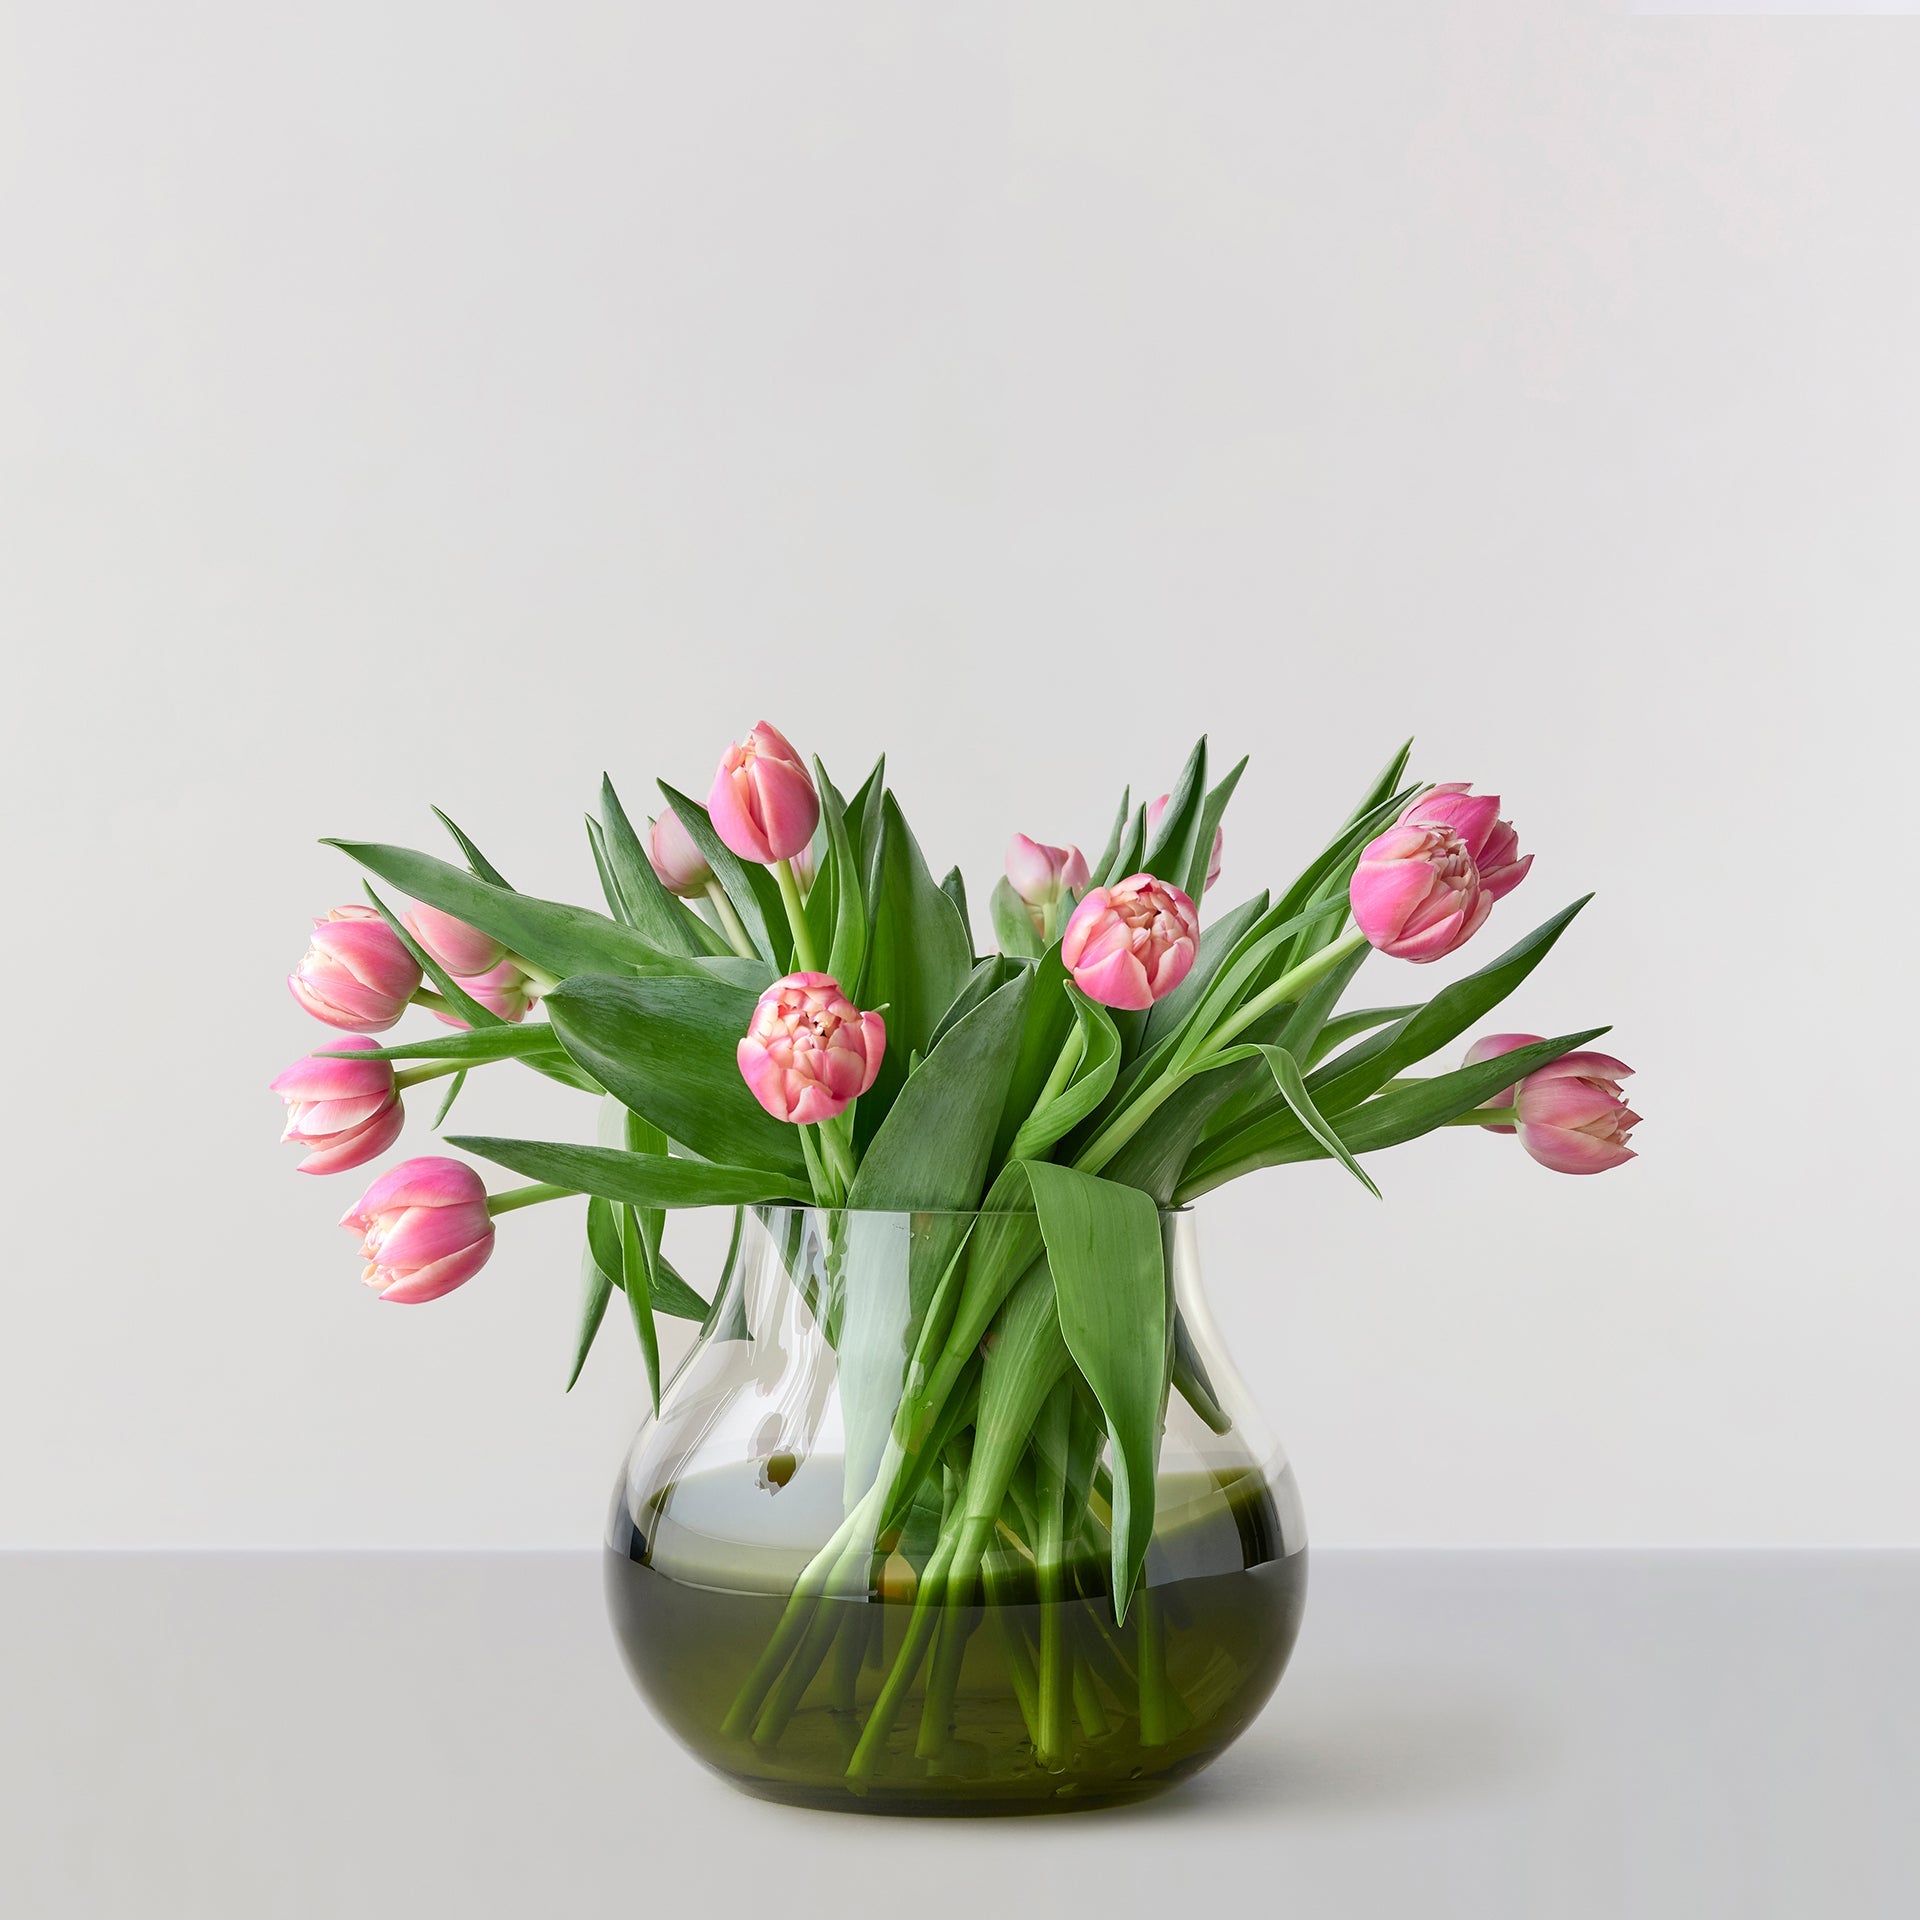 Billede af Flower Vase no. 23 - Moss green